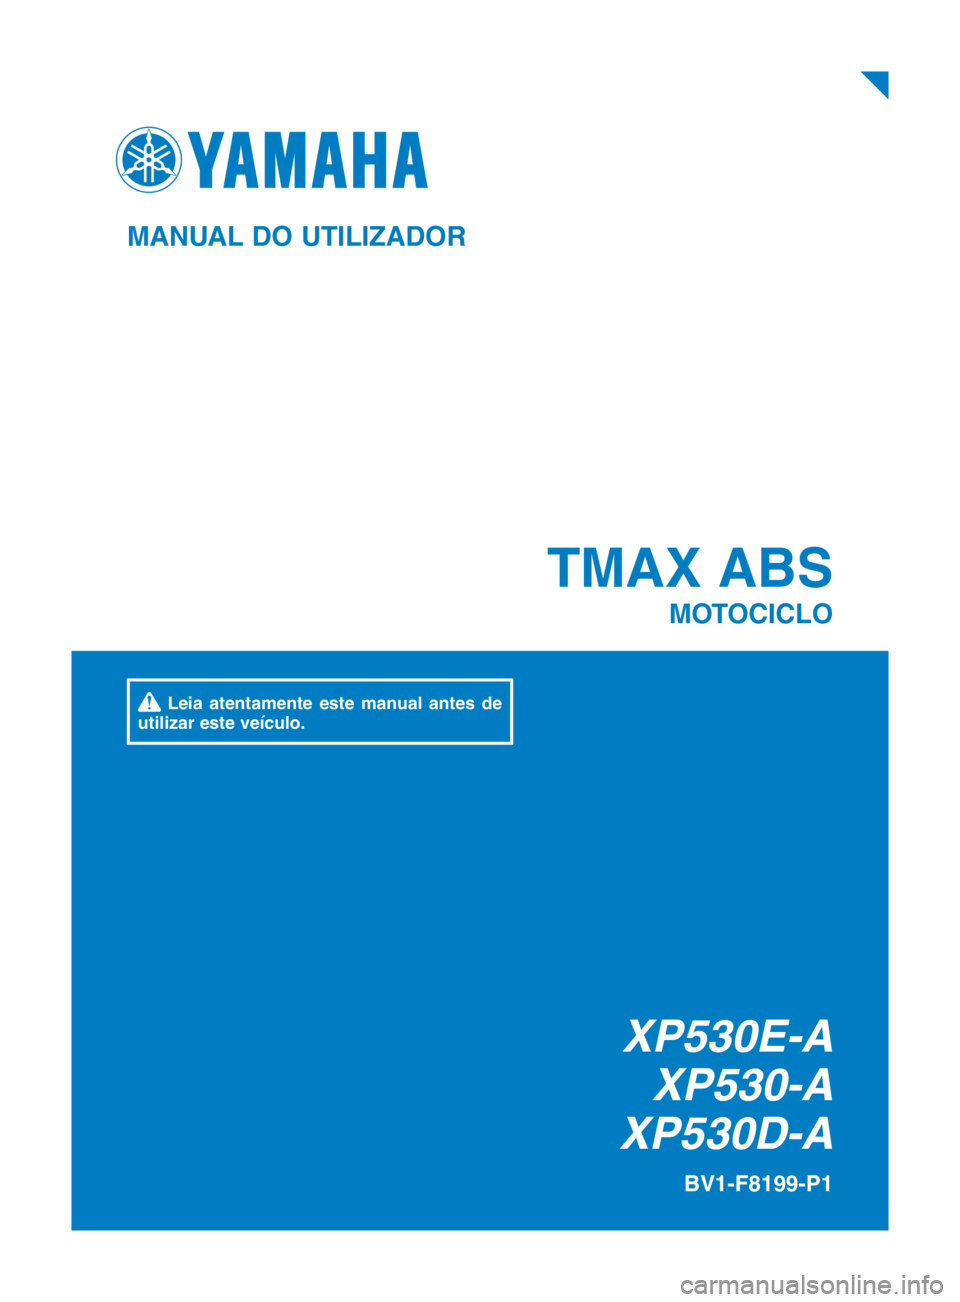 YAMAHA TMAX 2018  Manual de utilização (in Portuguese) XP530E-AXP530-A
XP530D-A
TMAX ABS
MOTOCICLO
BV1-F8199-P1
MANUAL DO UTILIZADOR
 Leia atentamente este manual antes de 
utilizar este veículo.
BV1-9-P1_cover.indd   12018/07/02   15:02:26 